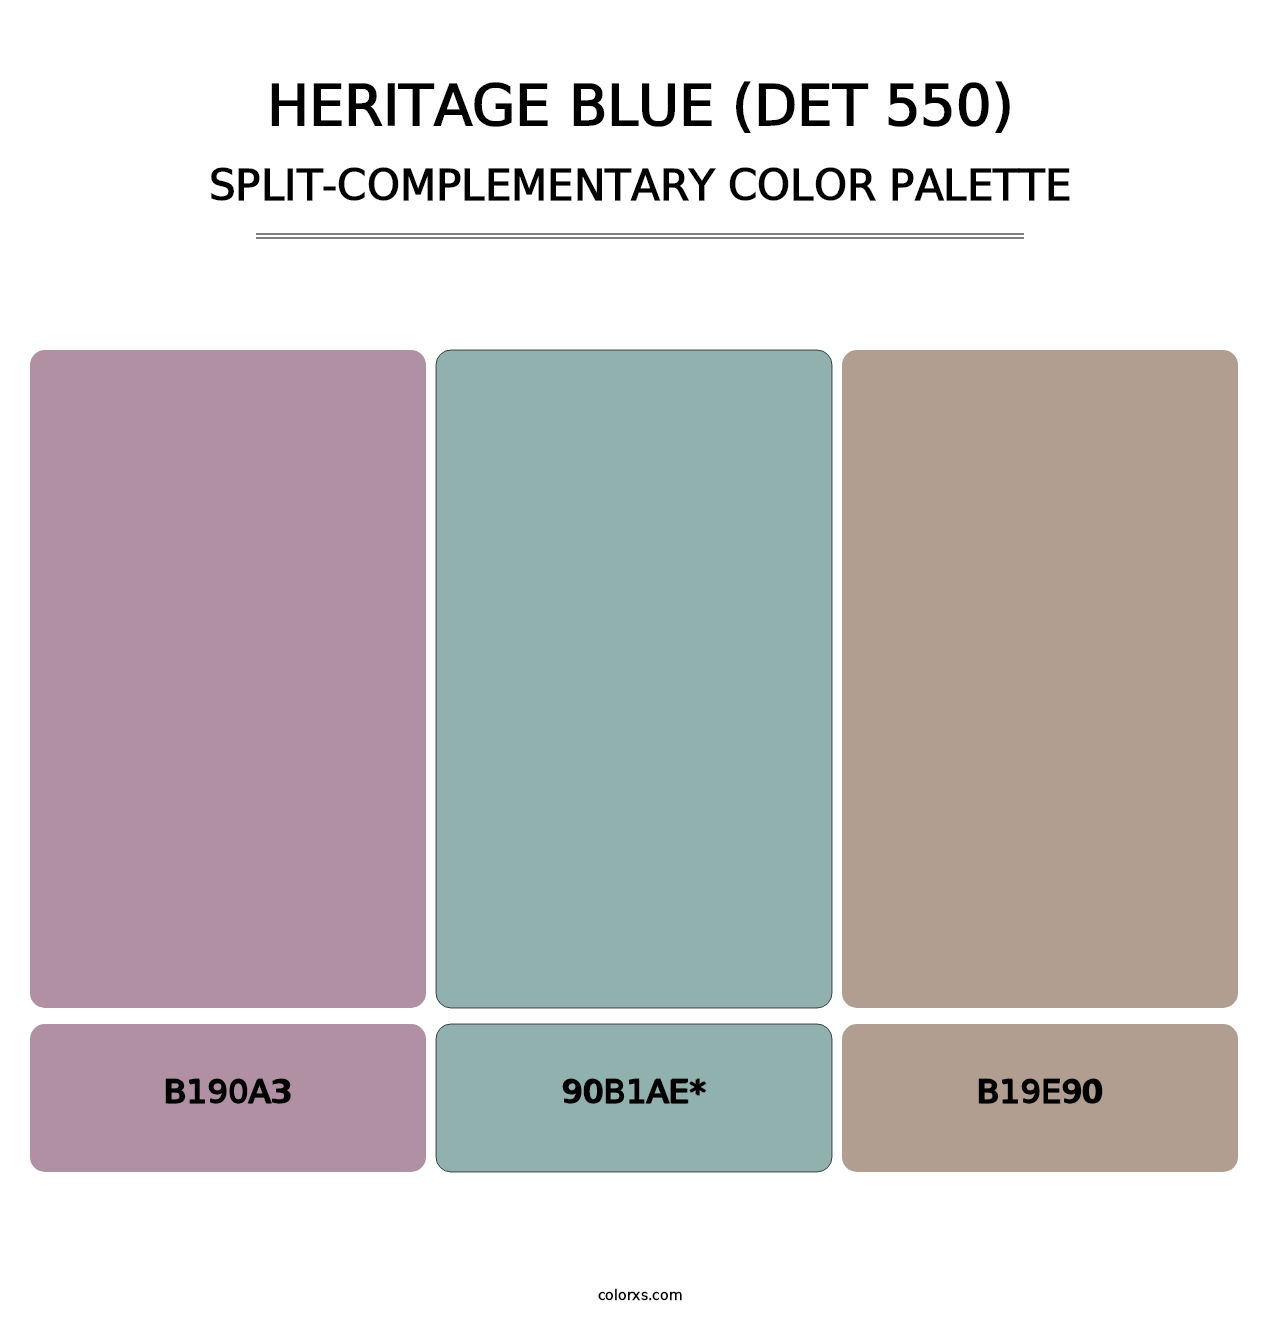 Heritage Blue (DET 550) - Split-Complementary Color Palette